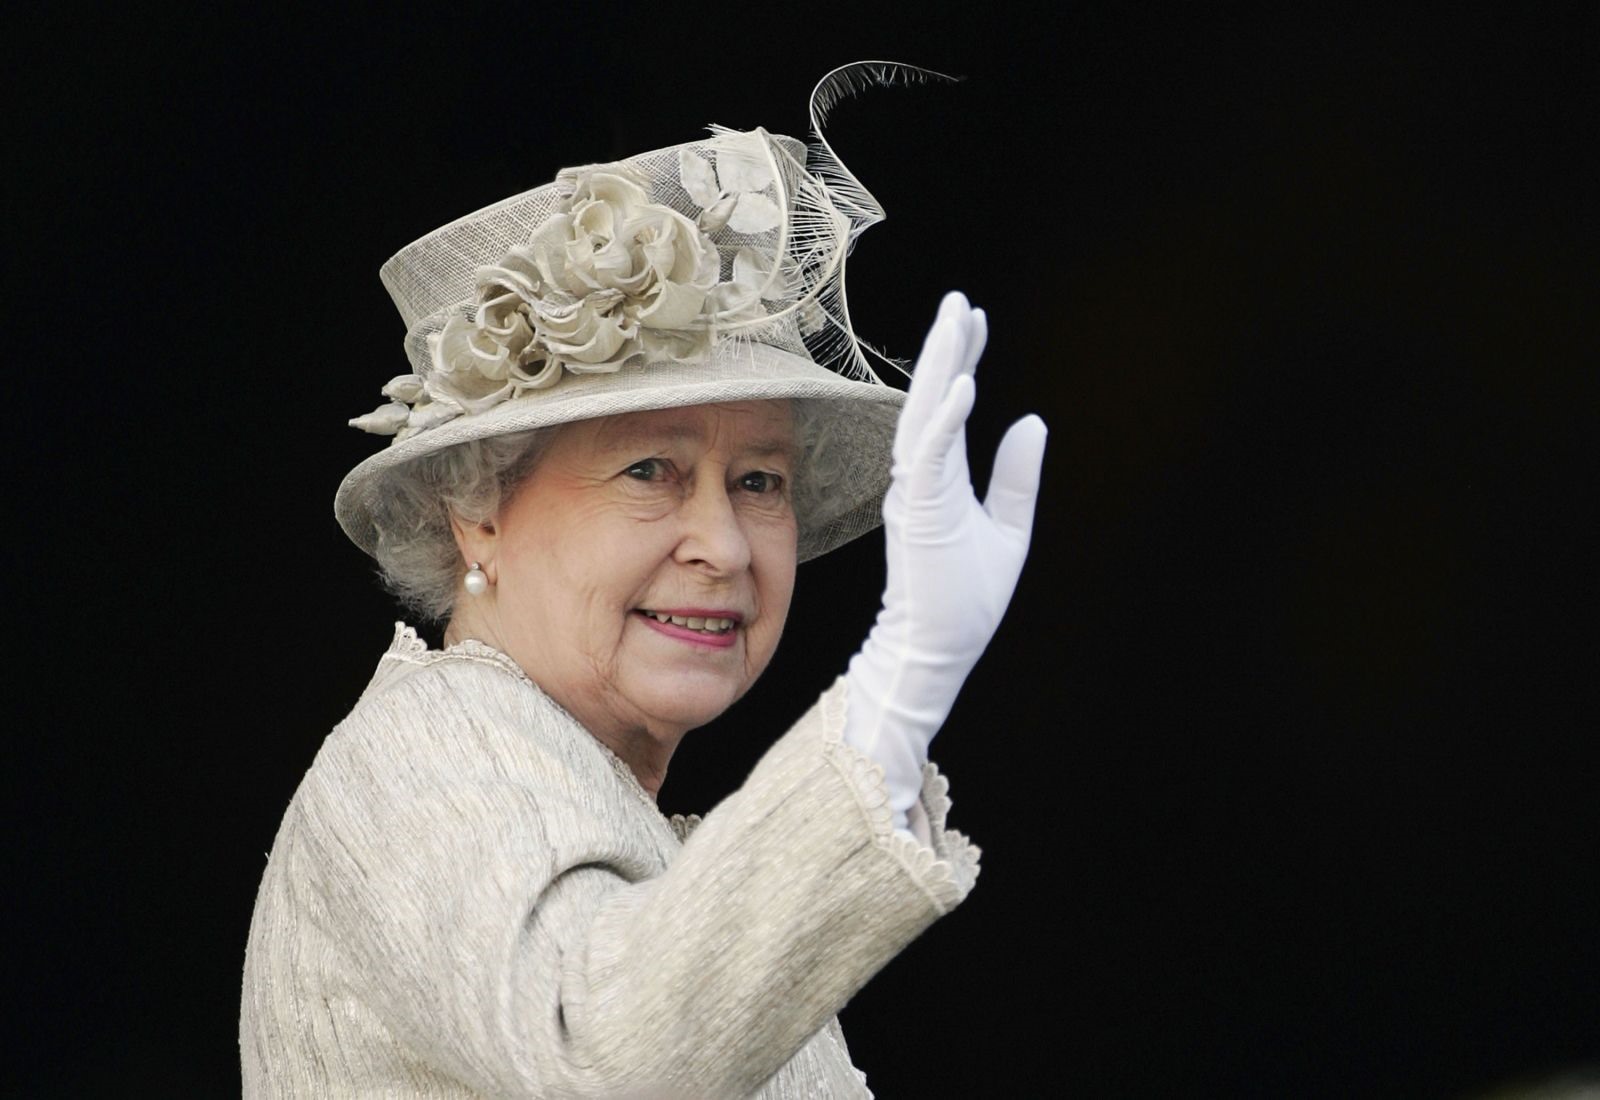 Nữ hoàng đến Nhà thờ St Paul làm lễ Tạ ơn nhân sinh nhật lần thứ 80 của bà vào năm 2006. Ảnh: Getty